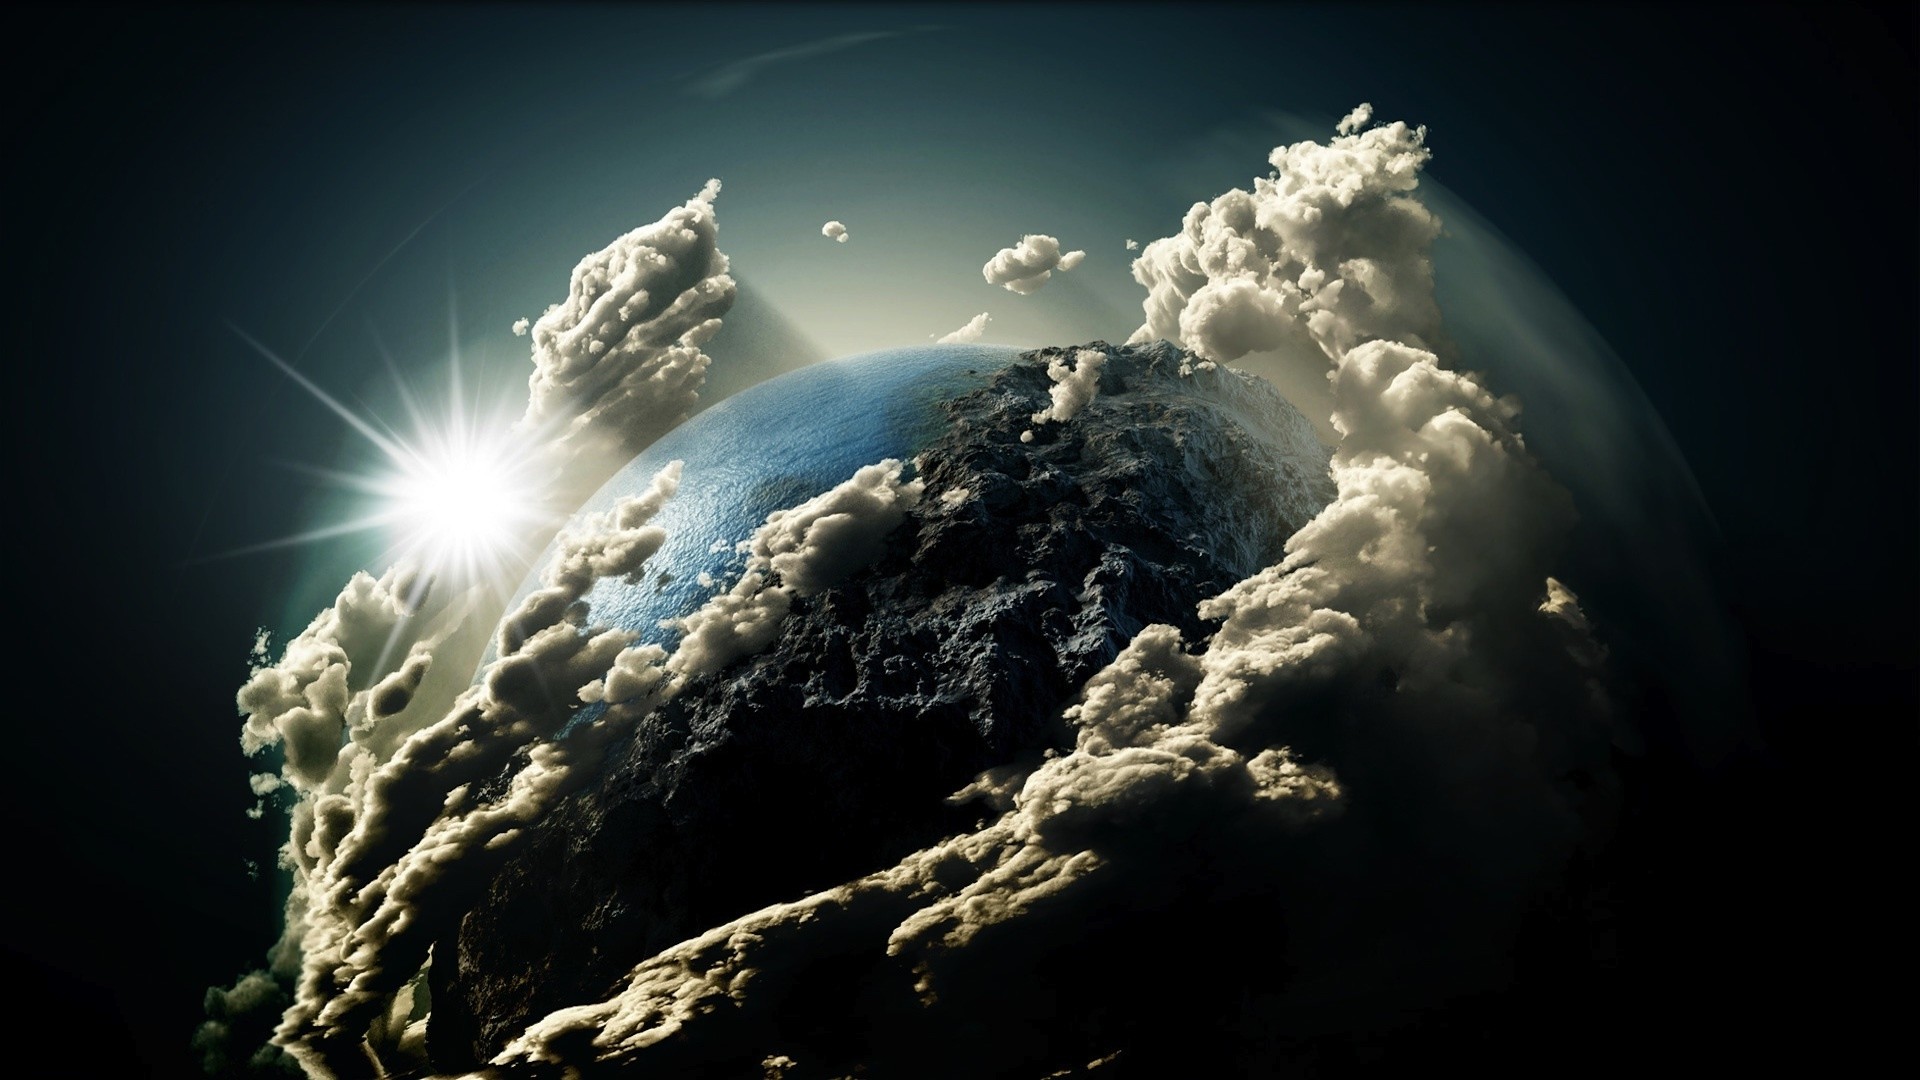 Chúng ta thường nhìn lên mây để tìm kiếm sự yên bình và thanh tịnh. Hình ảnh đám mây trái đất này sẽ mang lại cho bạn những cảm xúc đó và khiến bạn đắm say trong không gian tự nhiên đầy kỳ vĩ.